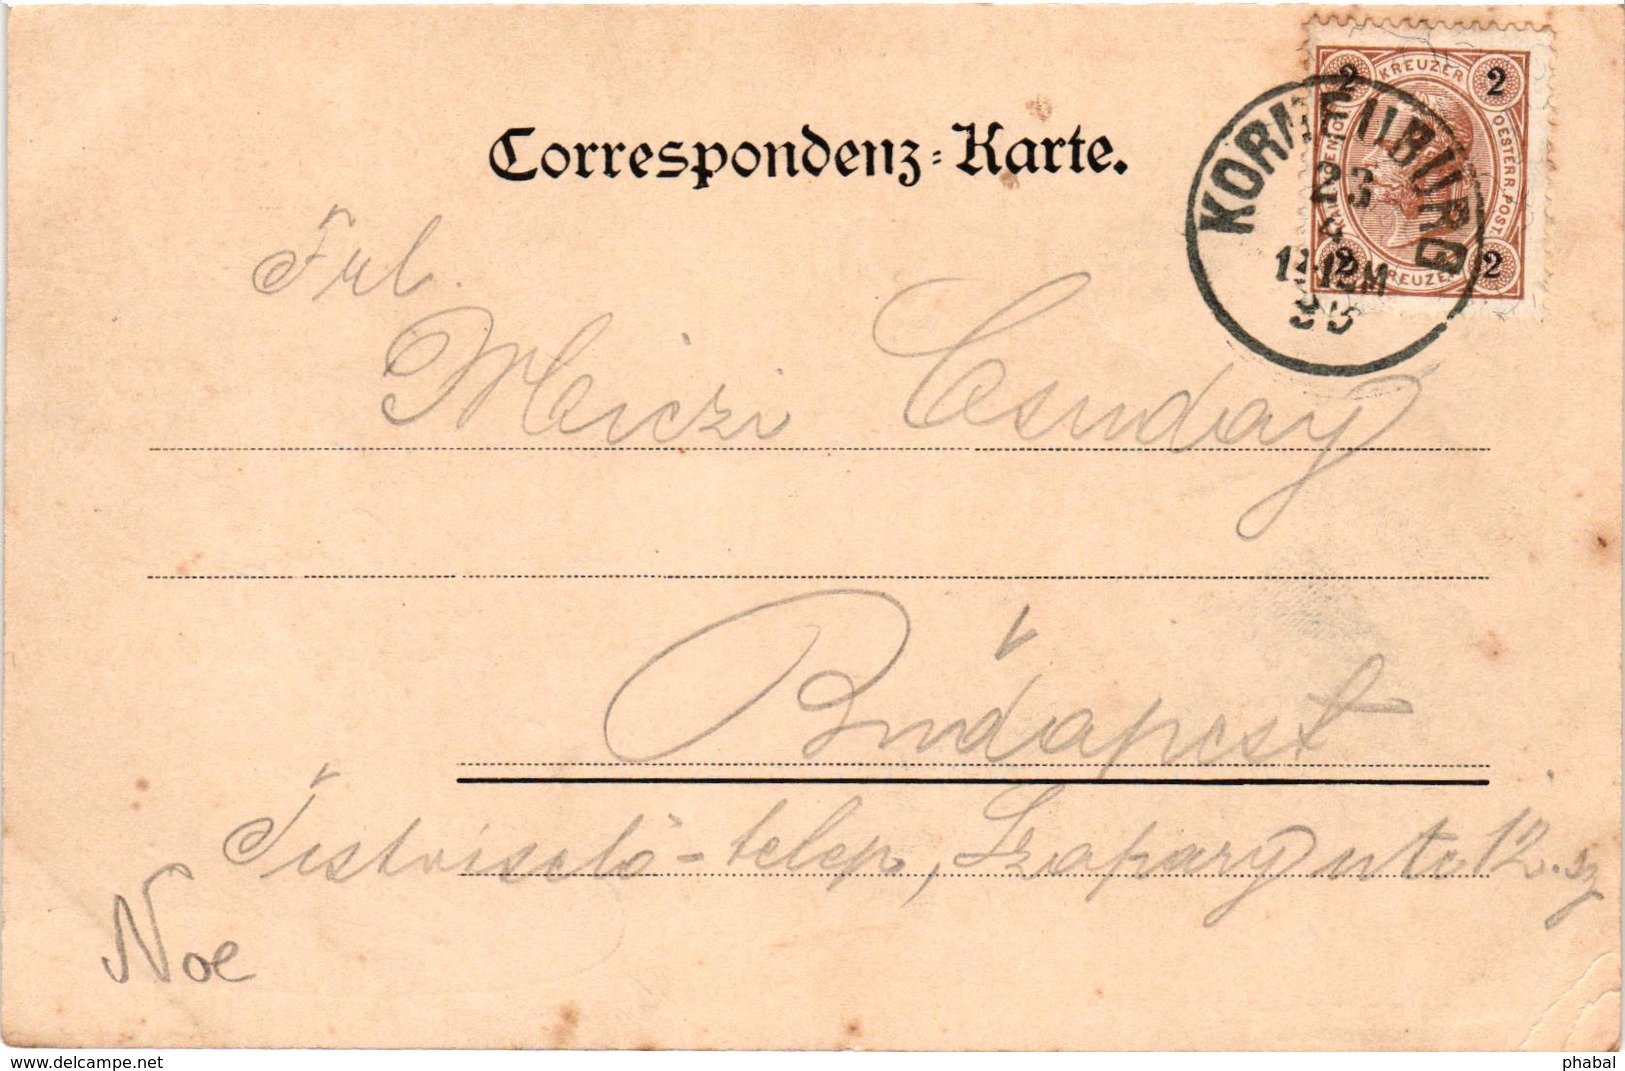 Austria, Niederösterreich, Korneuburg, Scenes, Old Postcard 1899 - Korneuburg